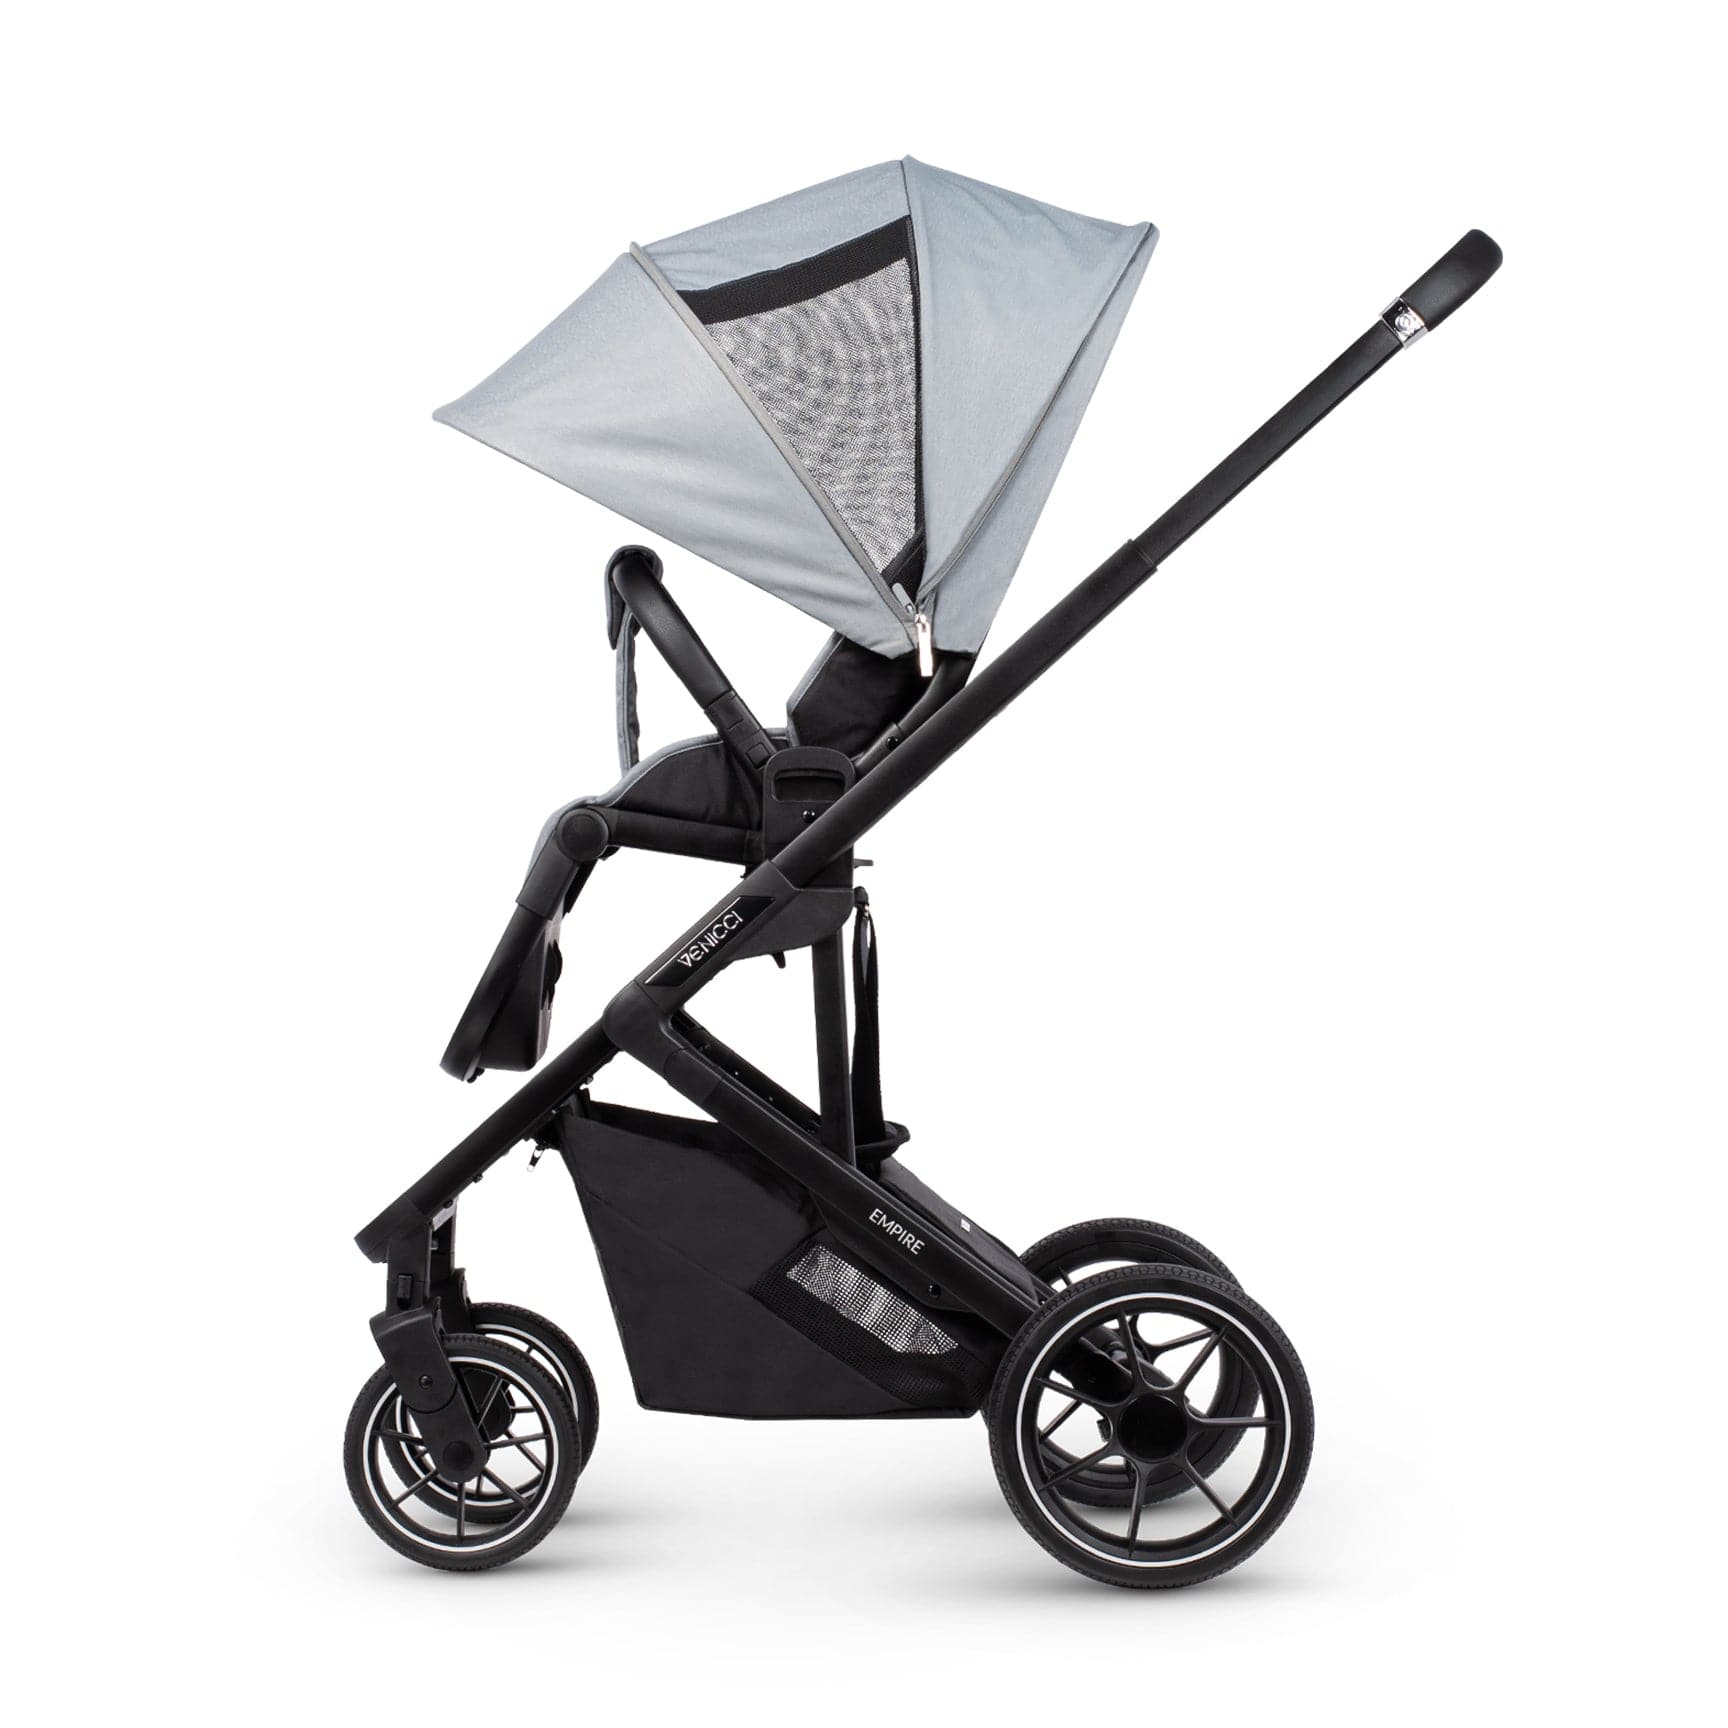 Venicci baby pushchairs Venicci Empire Stroller & Accessory - Urban Grey 13176-URN-GRY